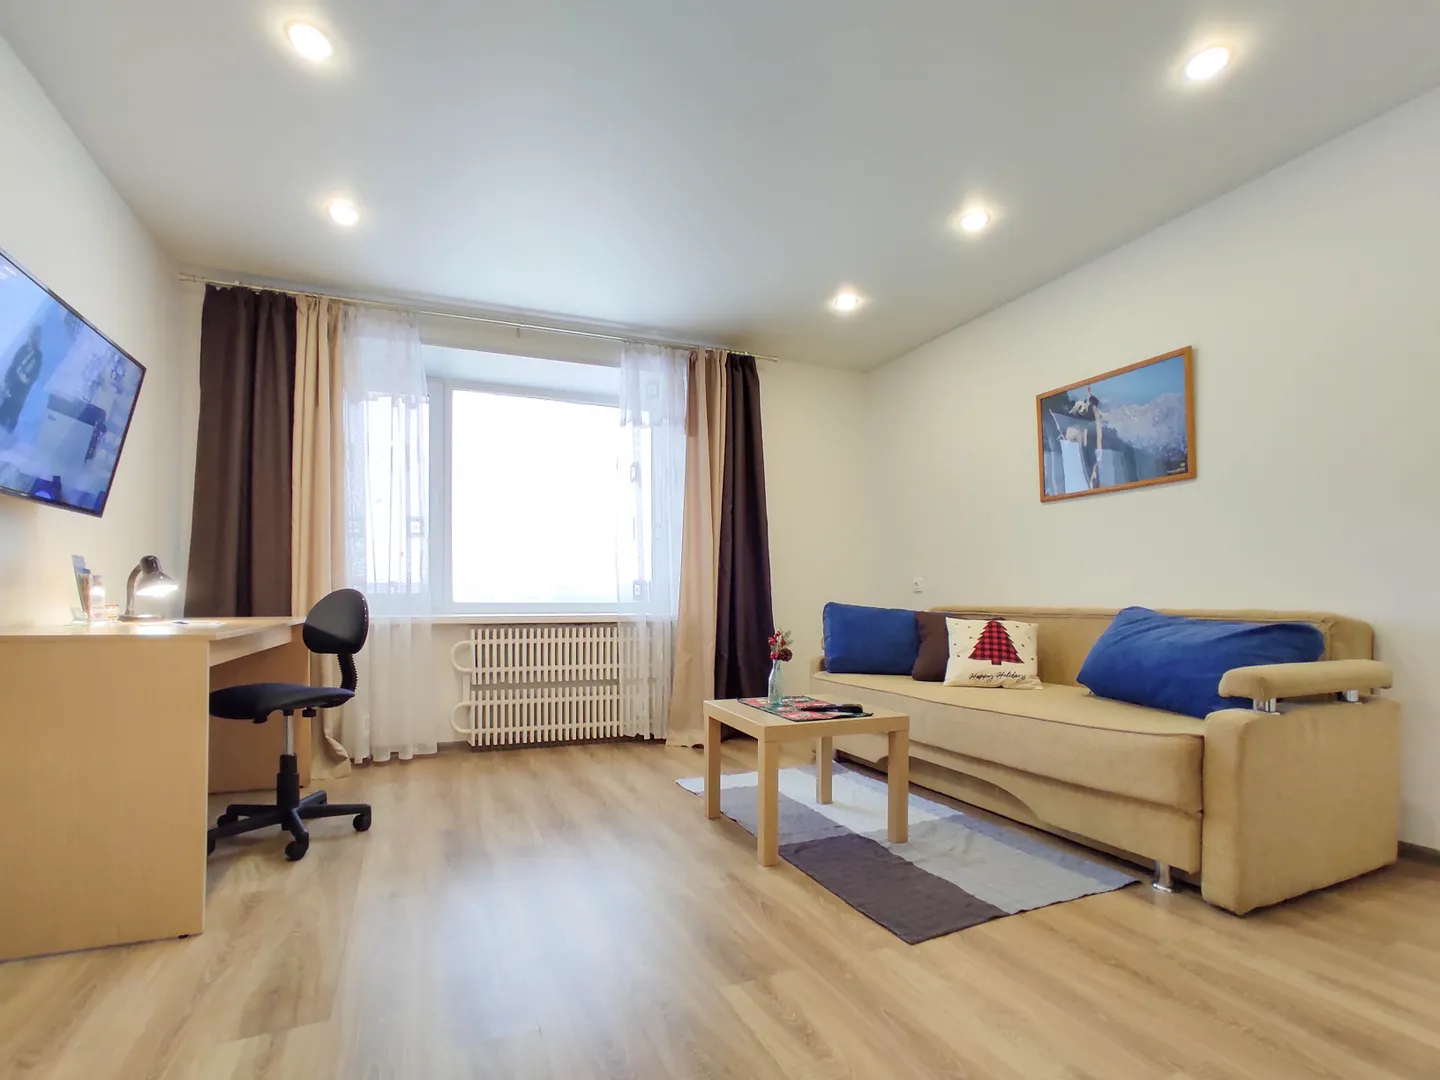 Гостиная комната: письменный стол, диван-кровать, телевизор и окно с панорамным видом